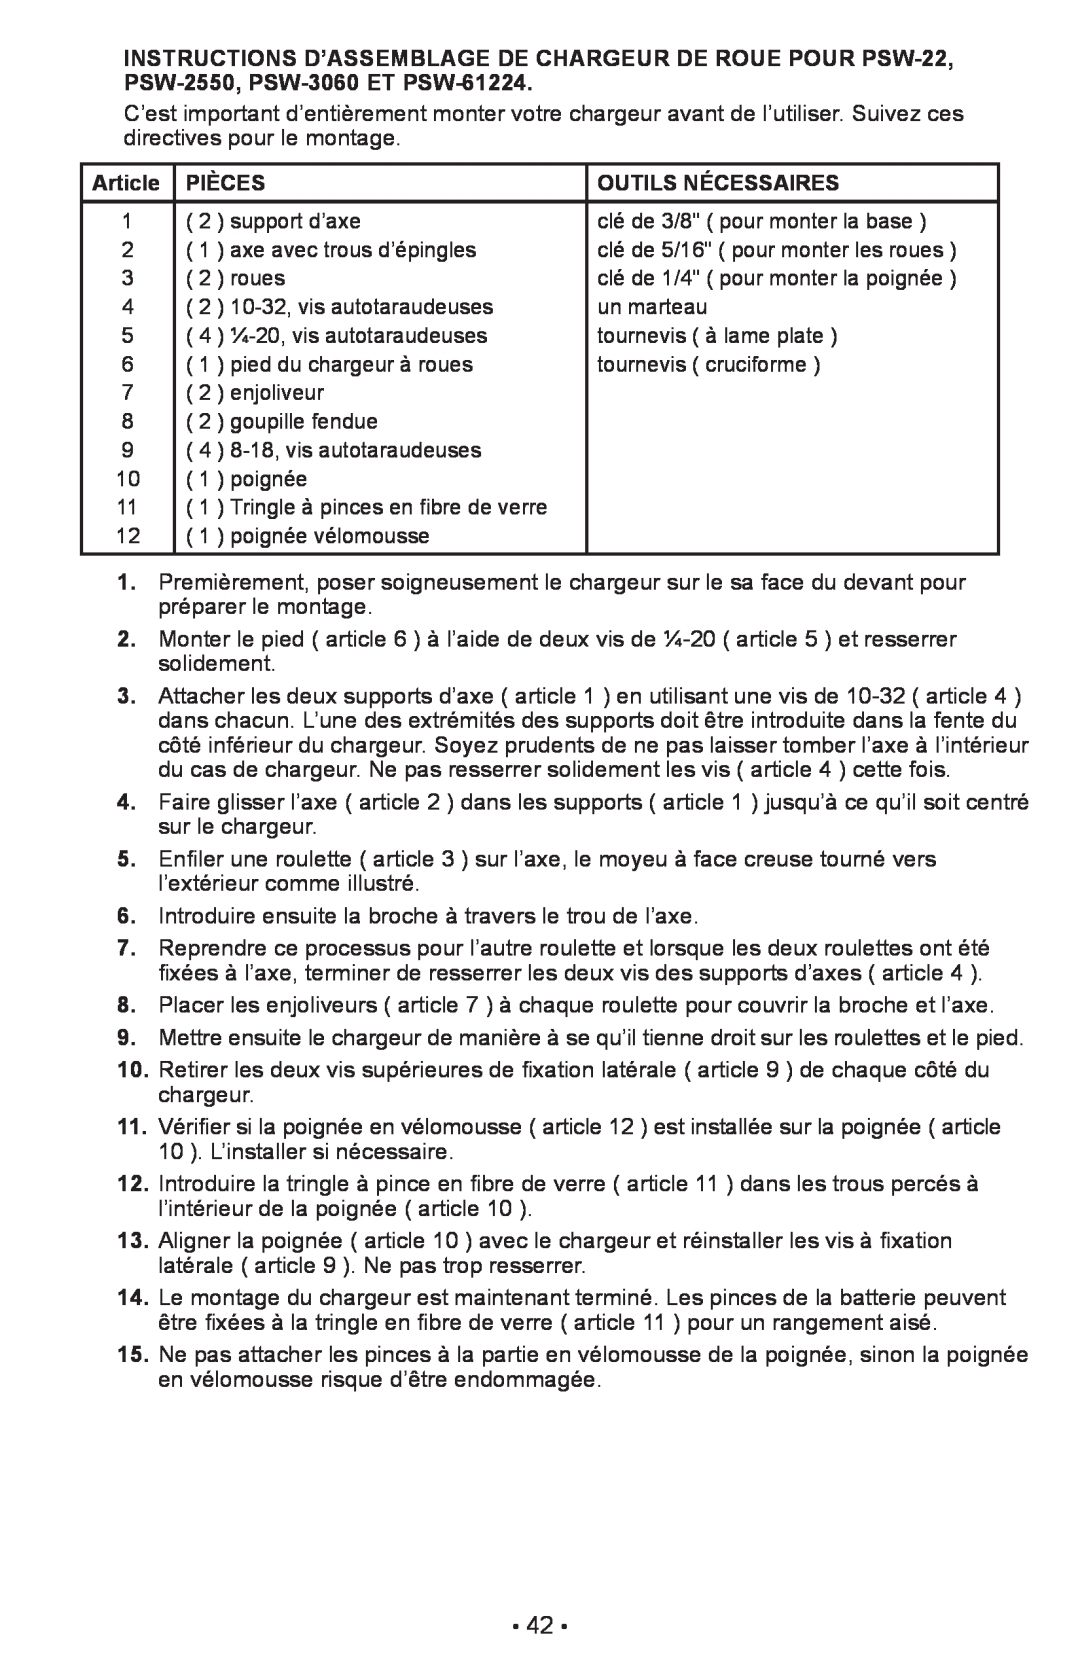 Schumacher PSW-22 owner manual Article, Pièces, Outils Nécessaires 